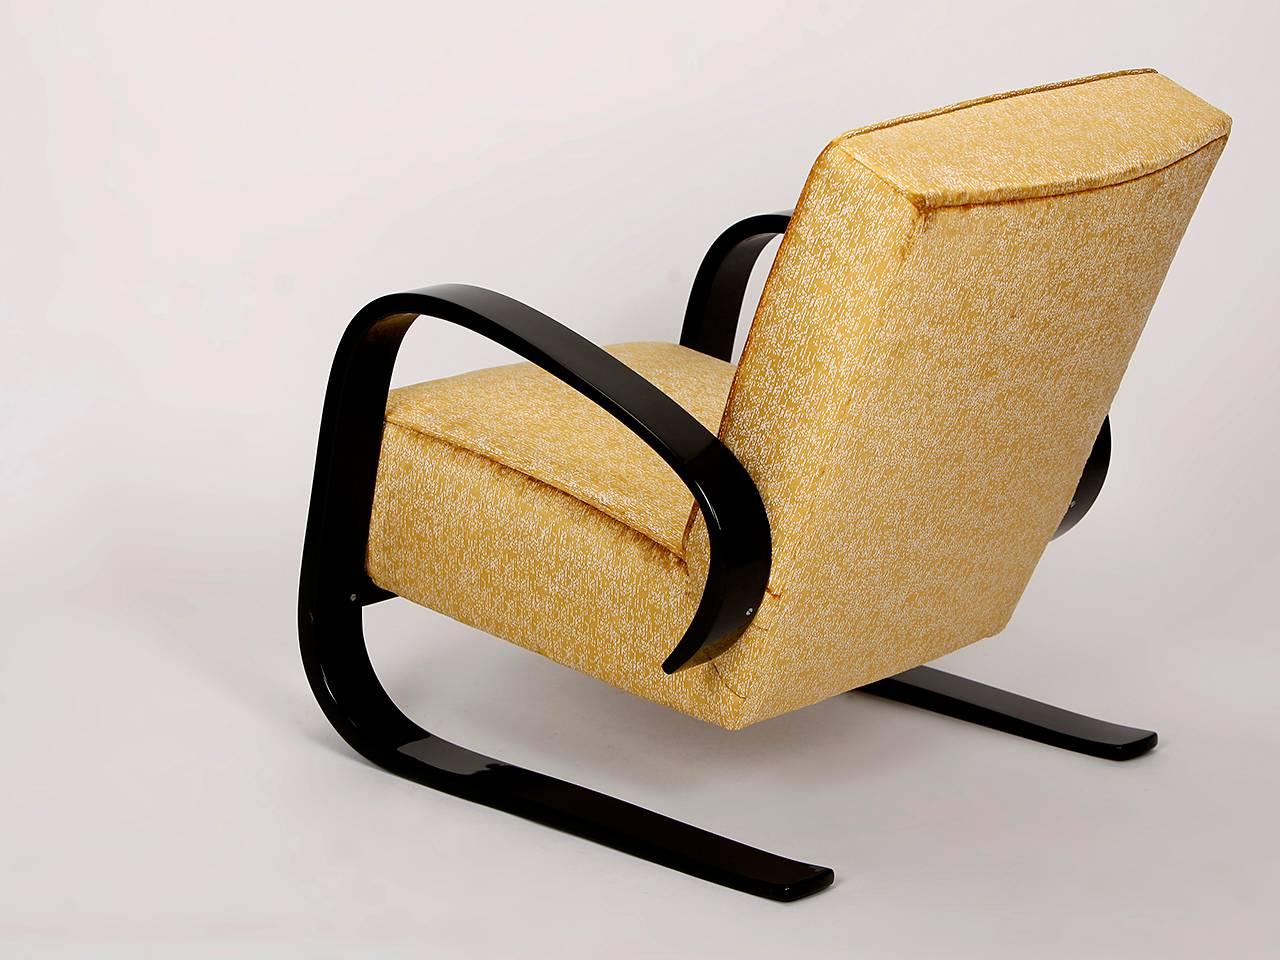 Czech Cantilever Lounge Chair by Miroslav Navratil for Spojene UP Zavody, 1950s For Sale